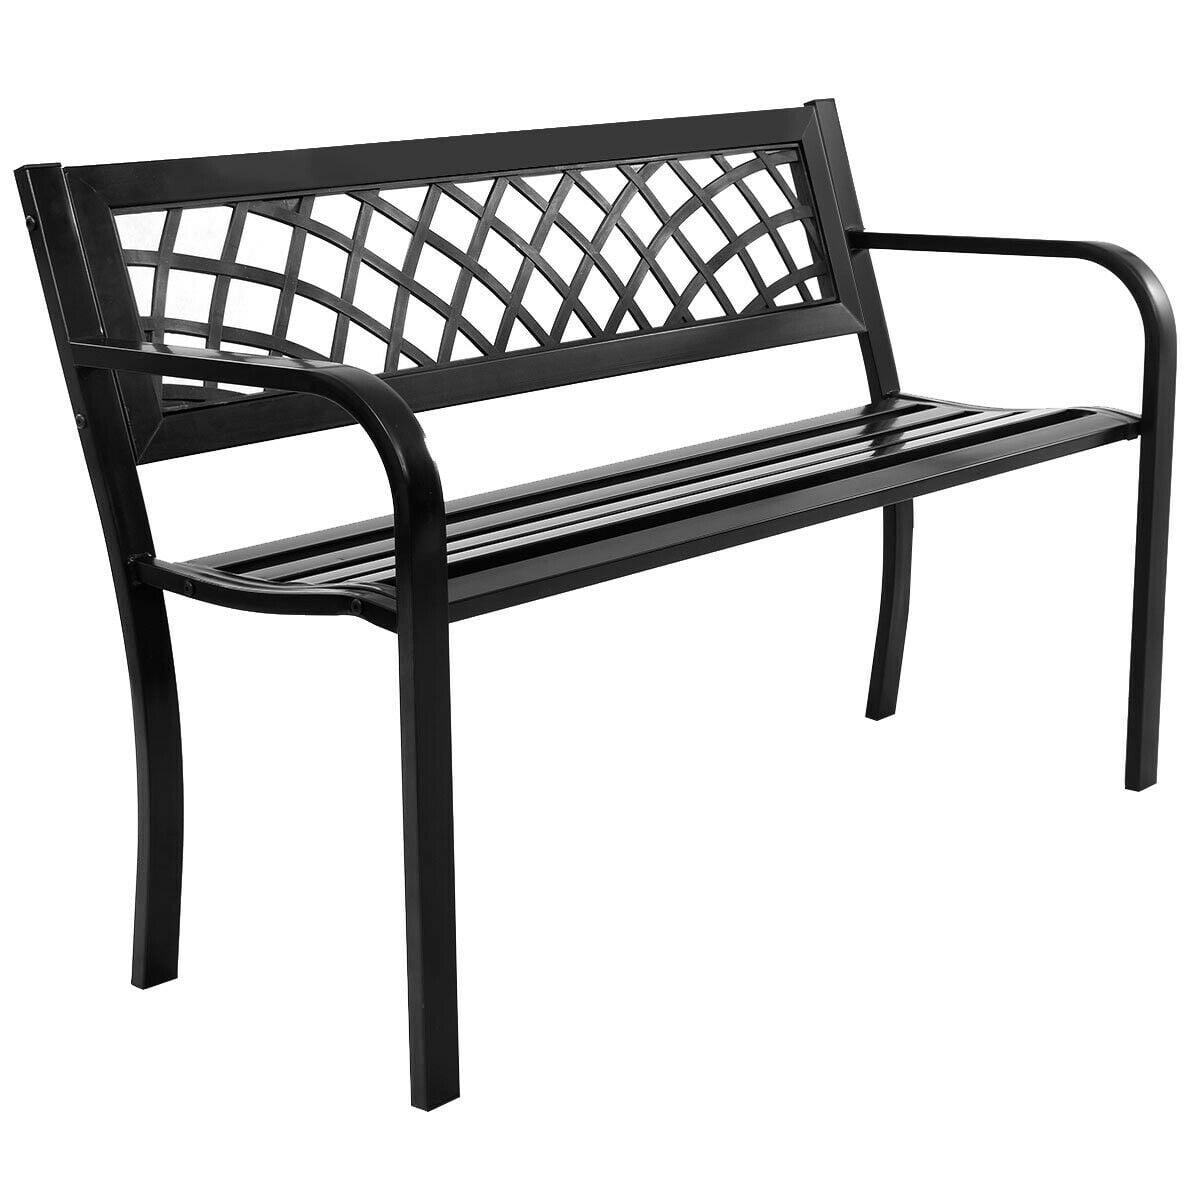 Elegant Parkside Steel Frame Bench with PVC Mesh Backrest - Black